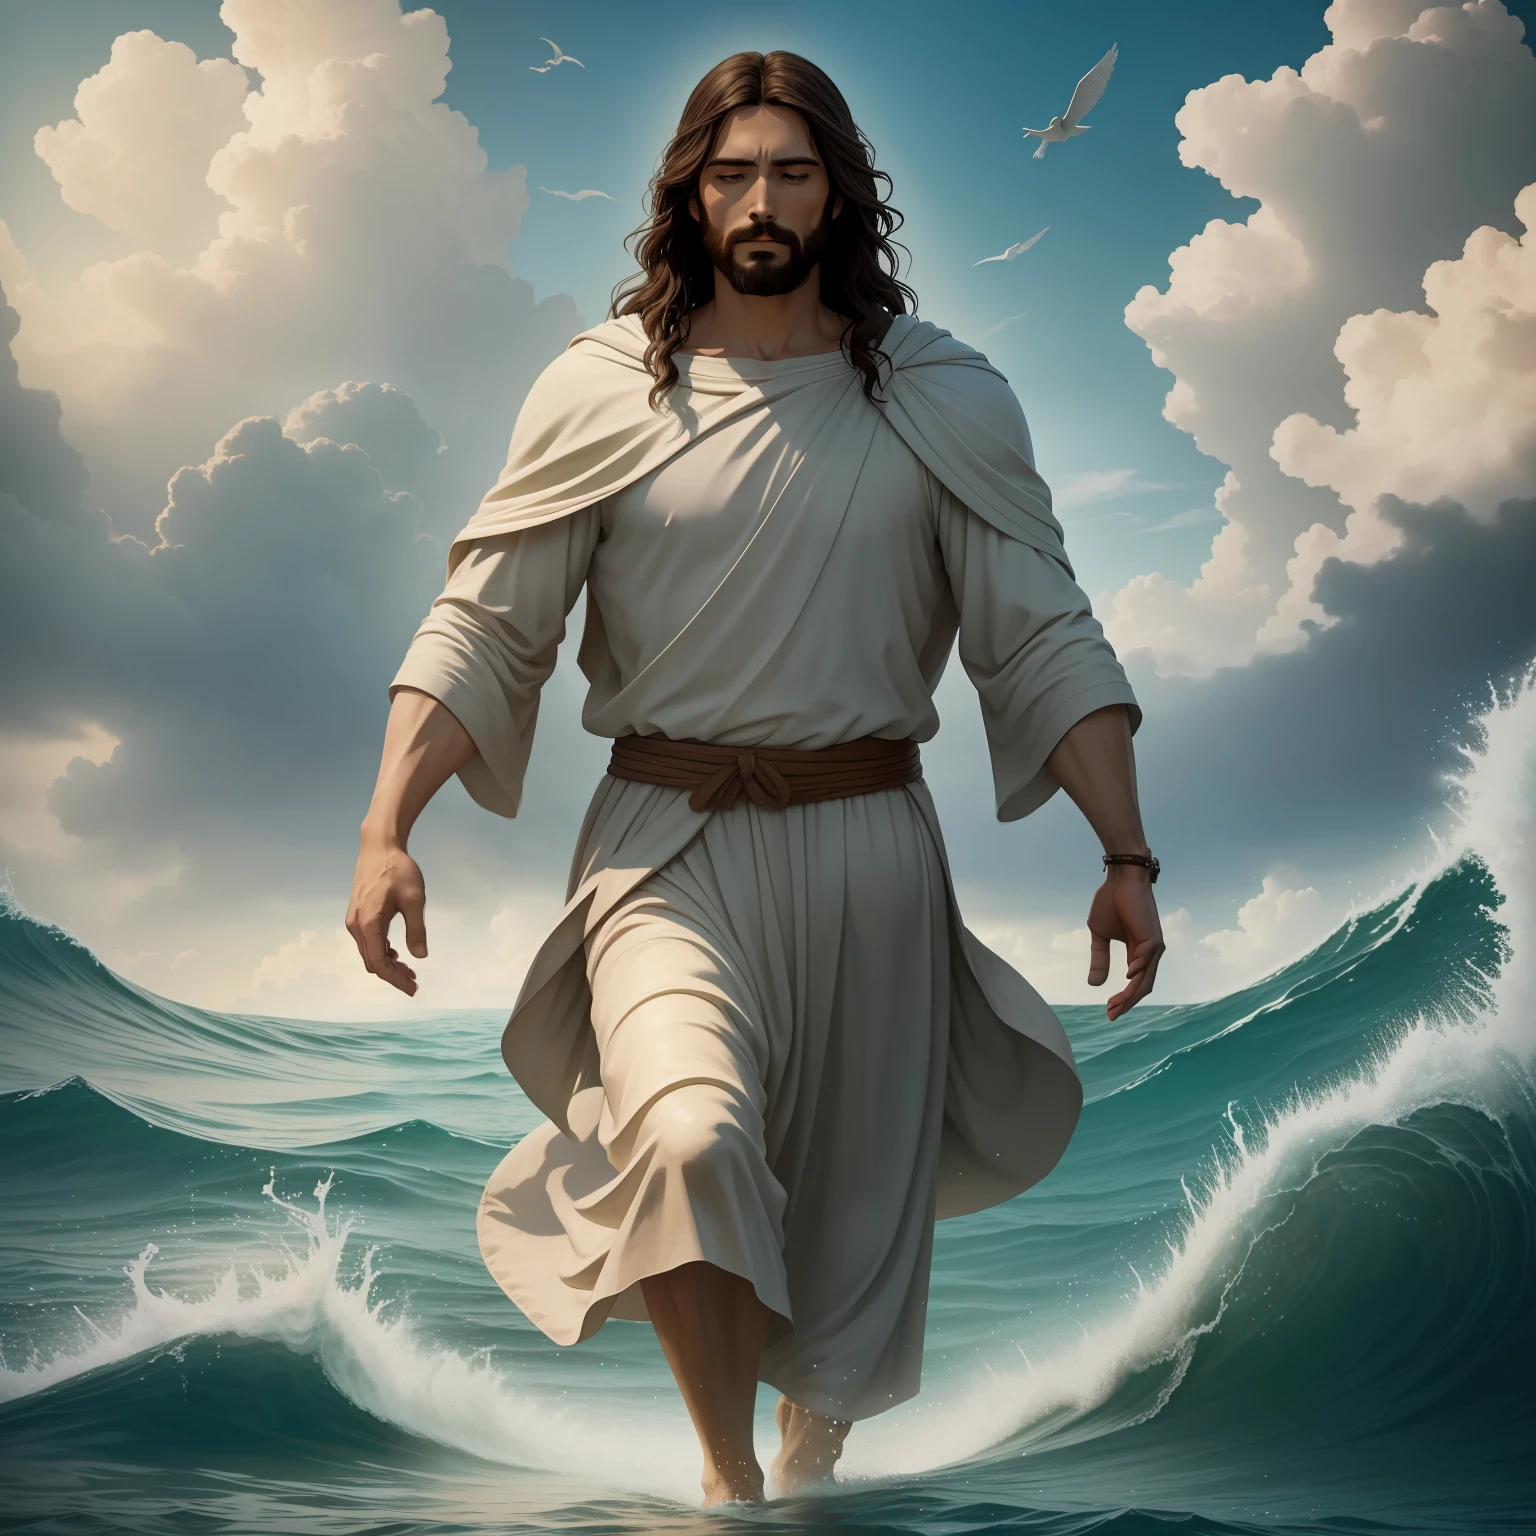 耶穌在水上行走 with a heaven cloud in the background, 耶穌在水上行走, 聖經插圖, 史詩般的聖經再現, 迫使他逃離, 從海洋出來, ! 握在手上!, 祝福幫助人, 下船, 海洋之神, 美麗的表現, 8k陽光祝福燈, 實際的,